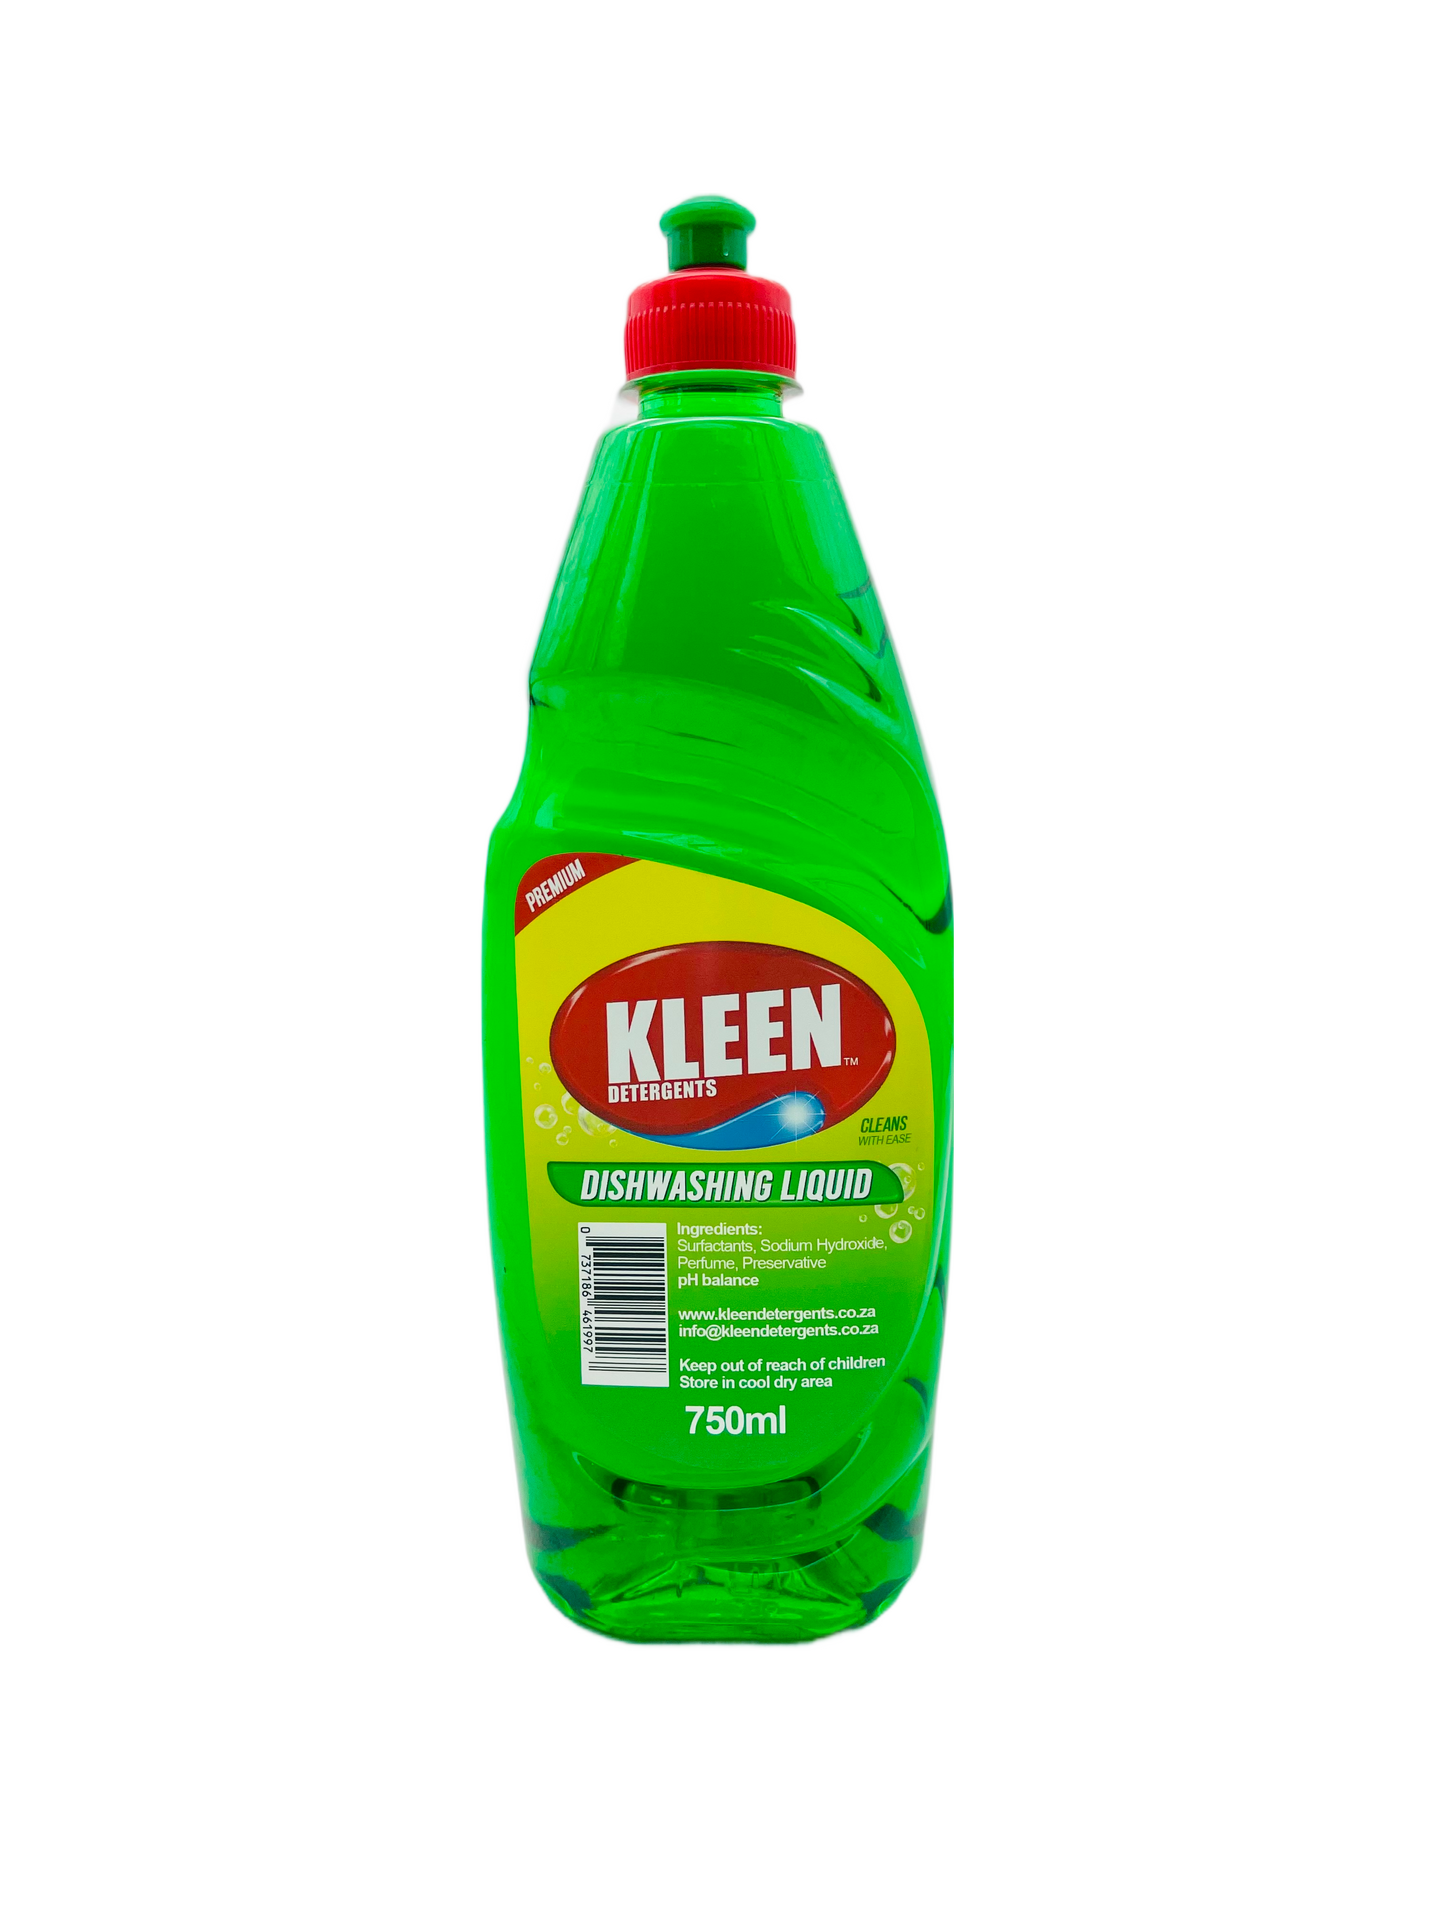 Kleen Detergents Dishwashing Liquid 750ml